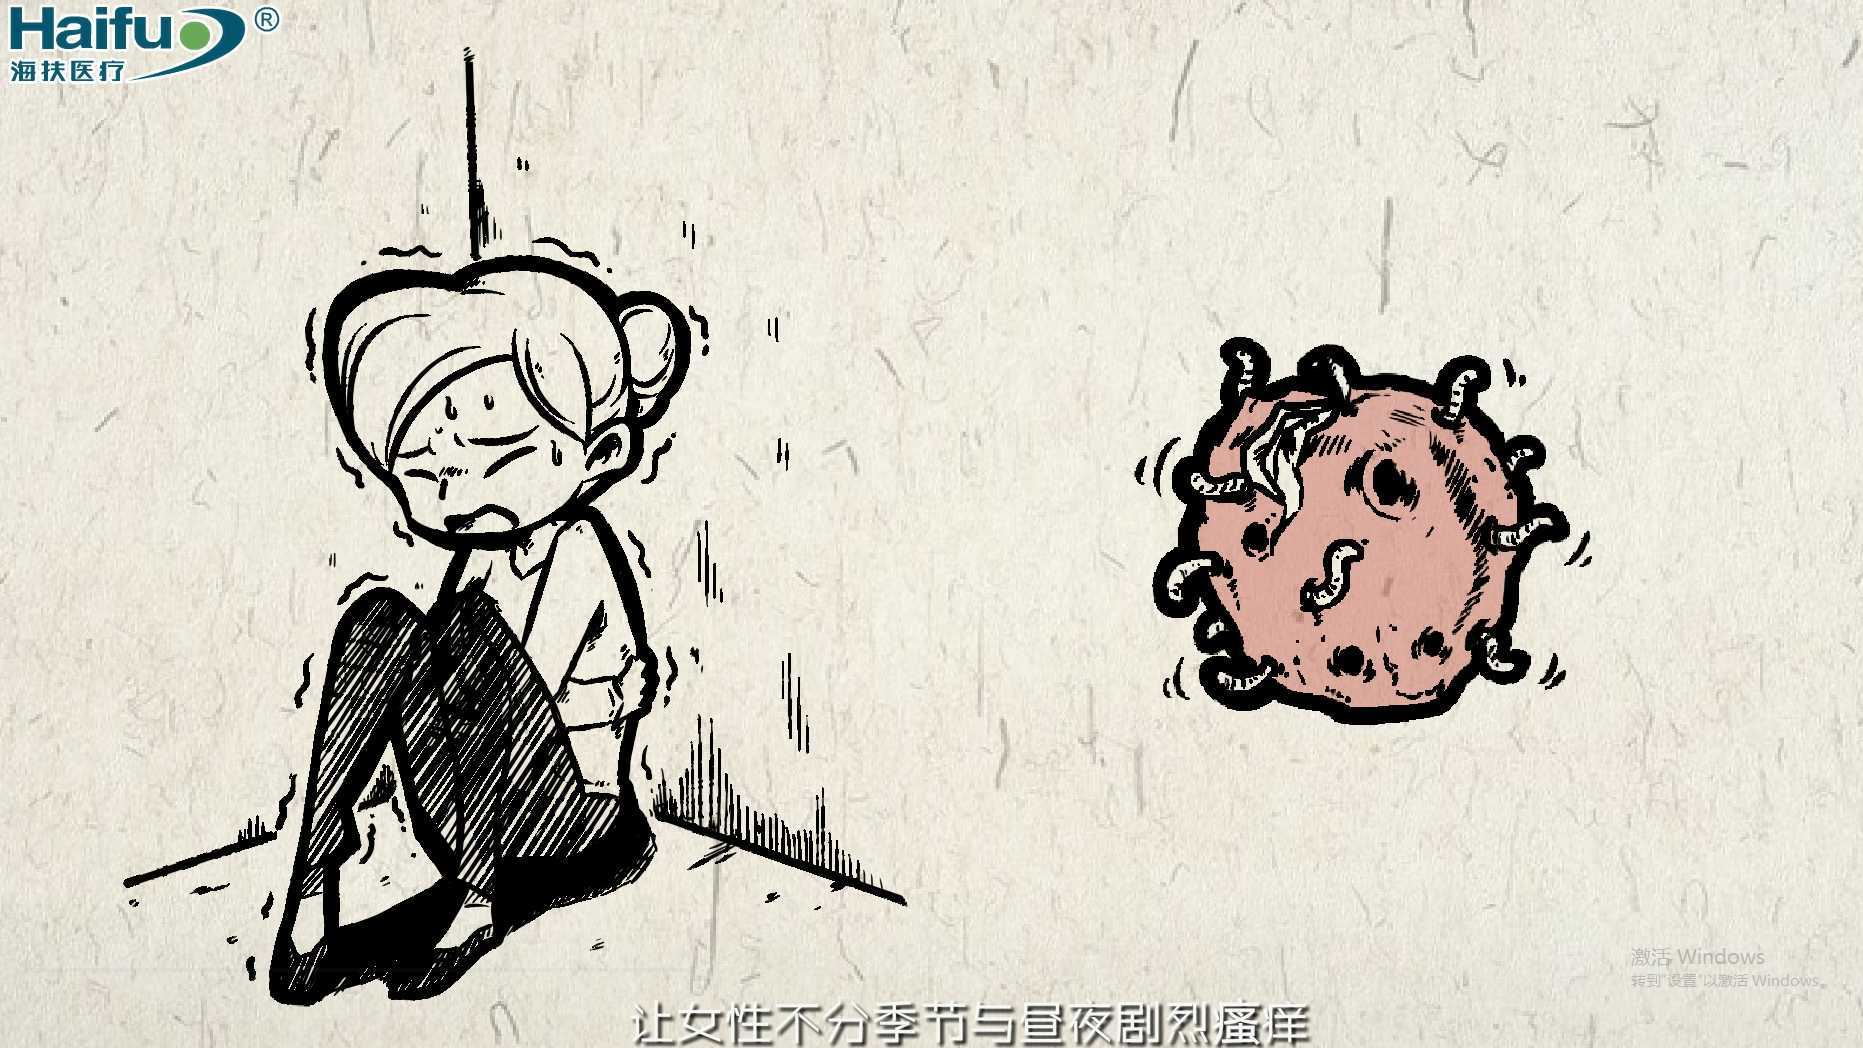 贵州天骐动漫作品 重庆海扶医疗-海极星超声妇科治疗仪手绘风格动画